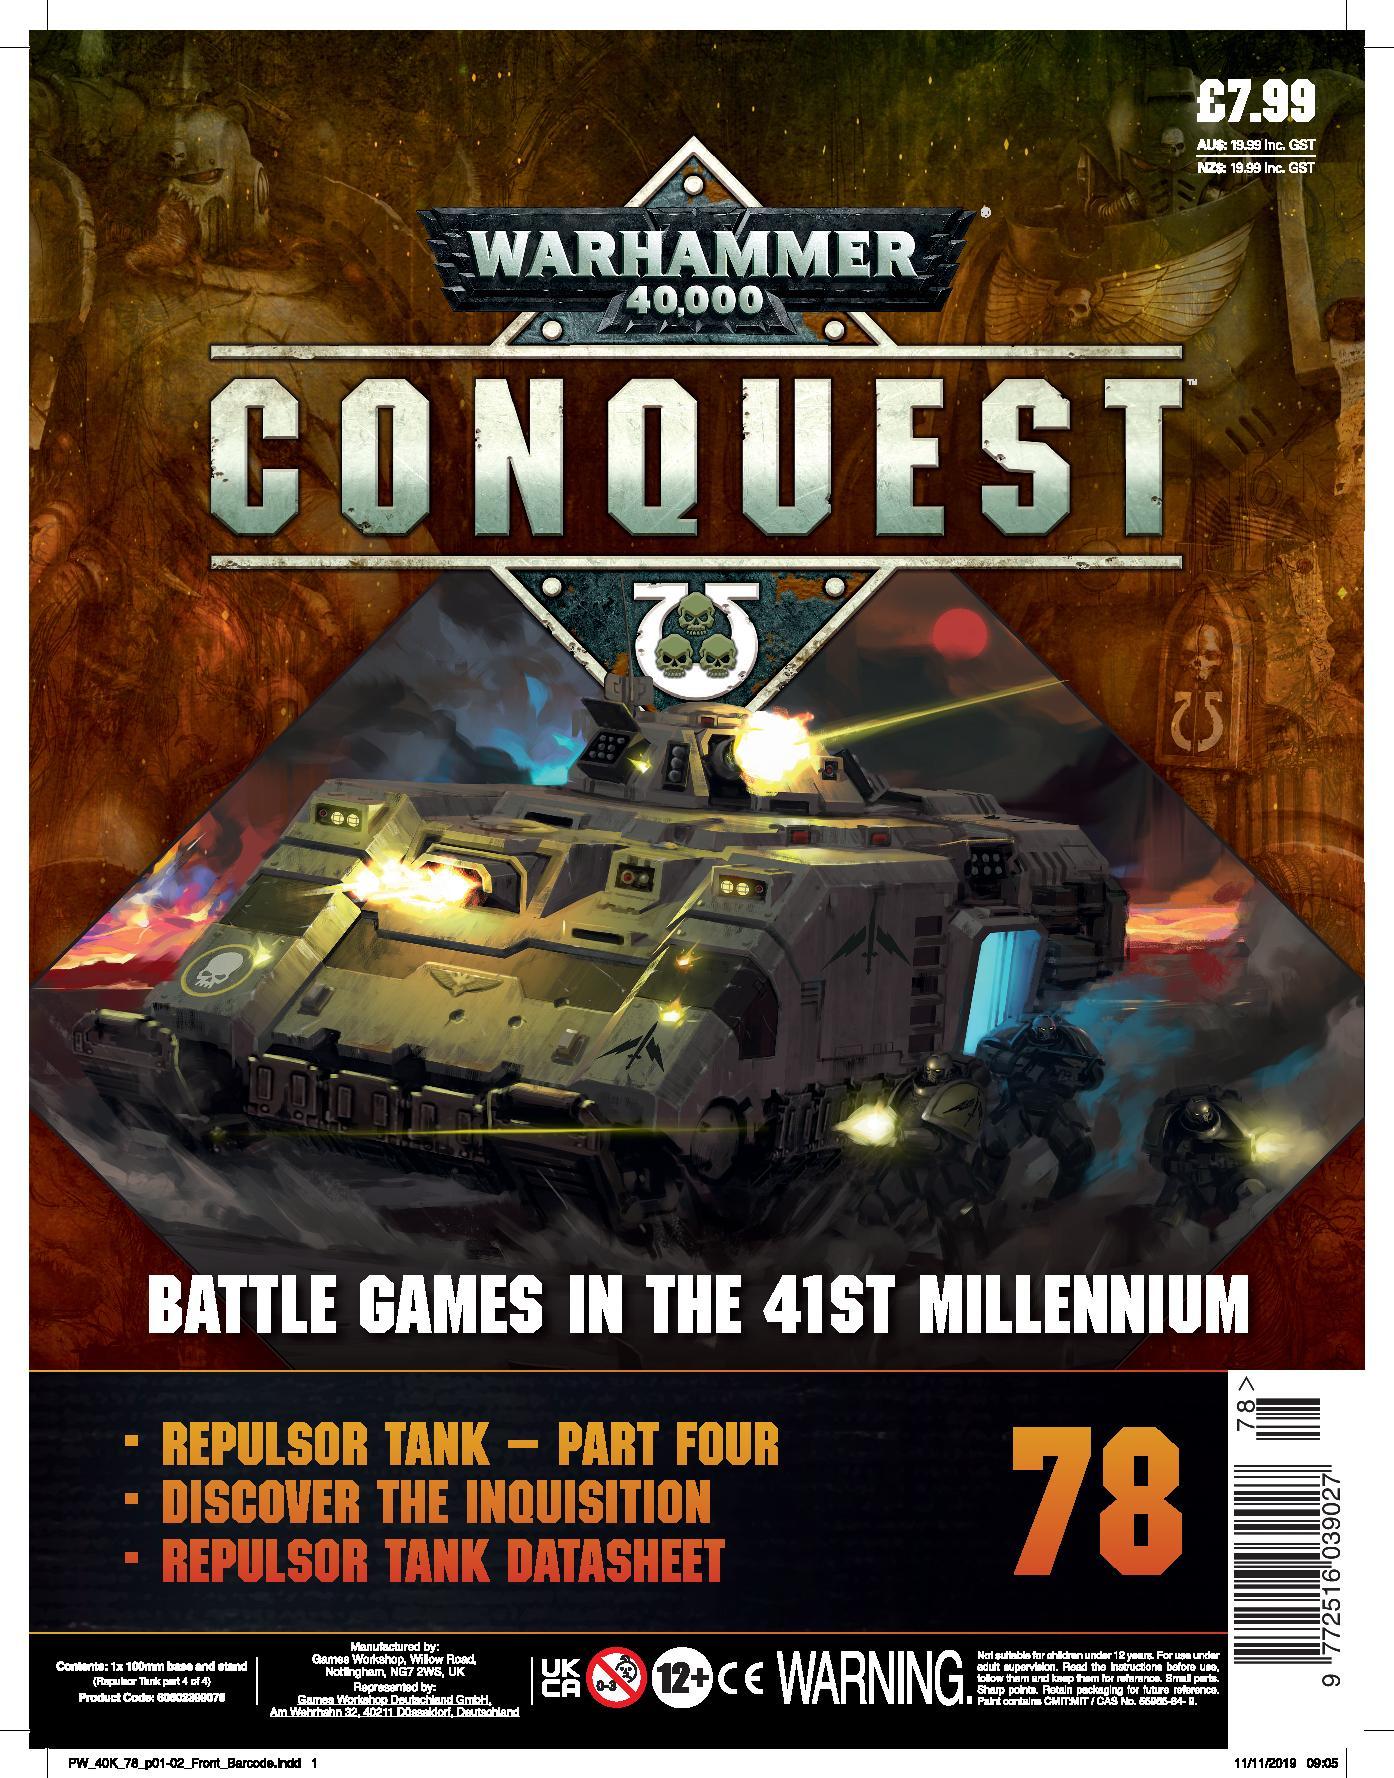 Warhammer Conquest #78 - Waterfront News